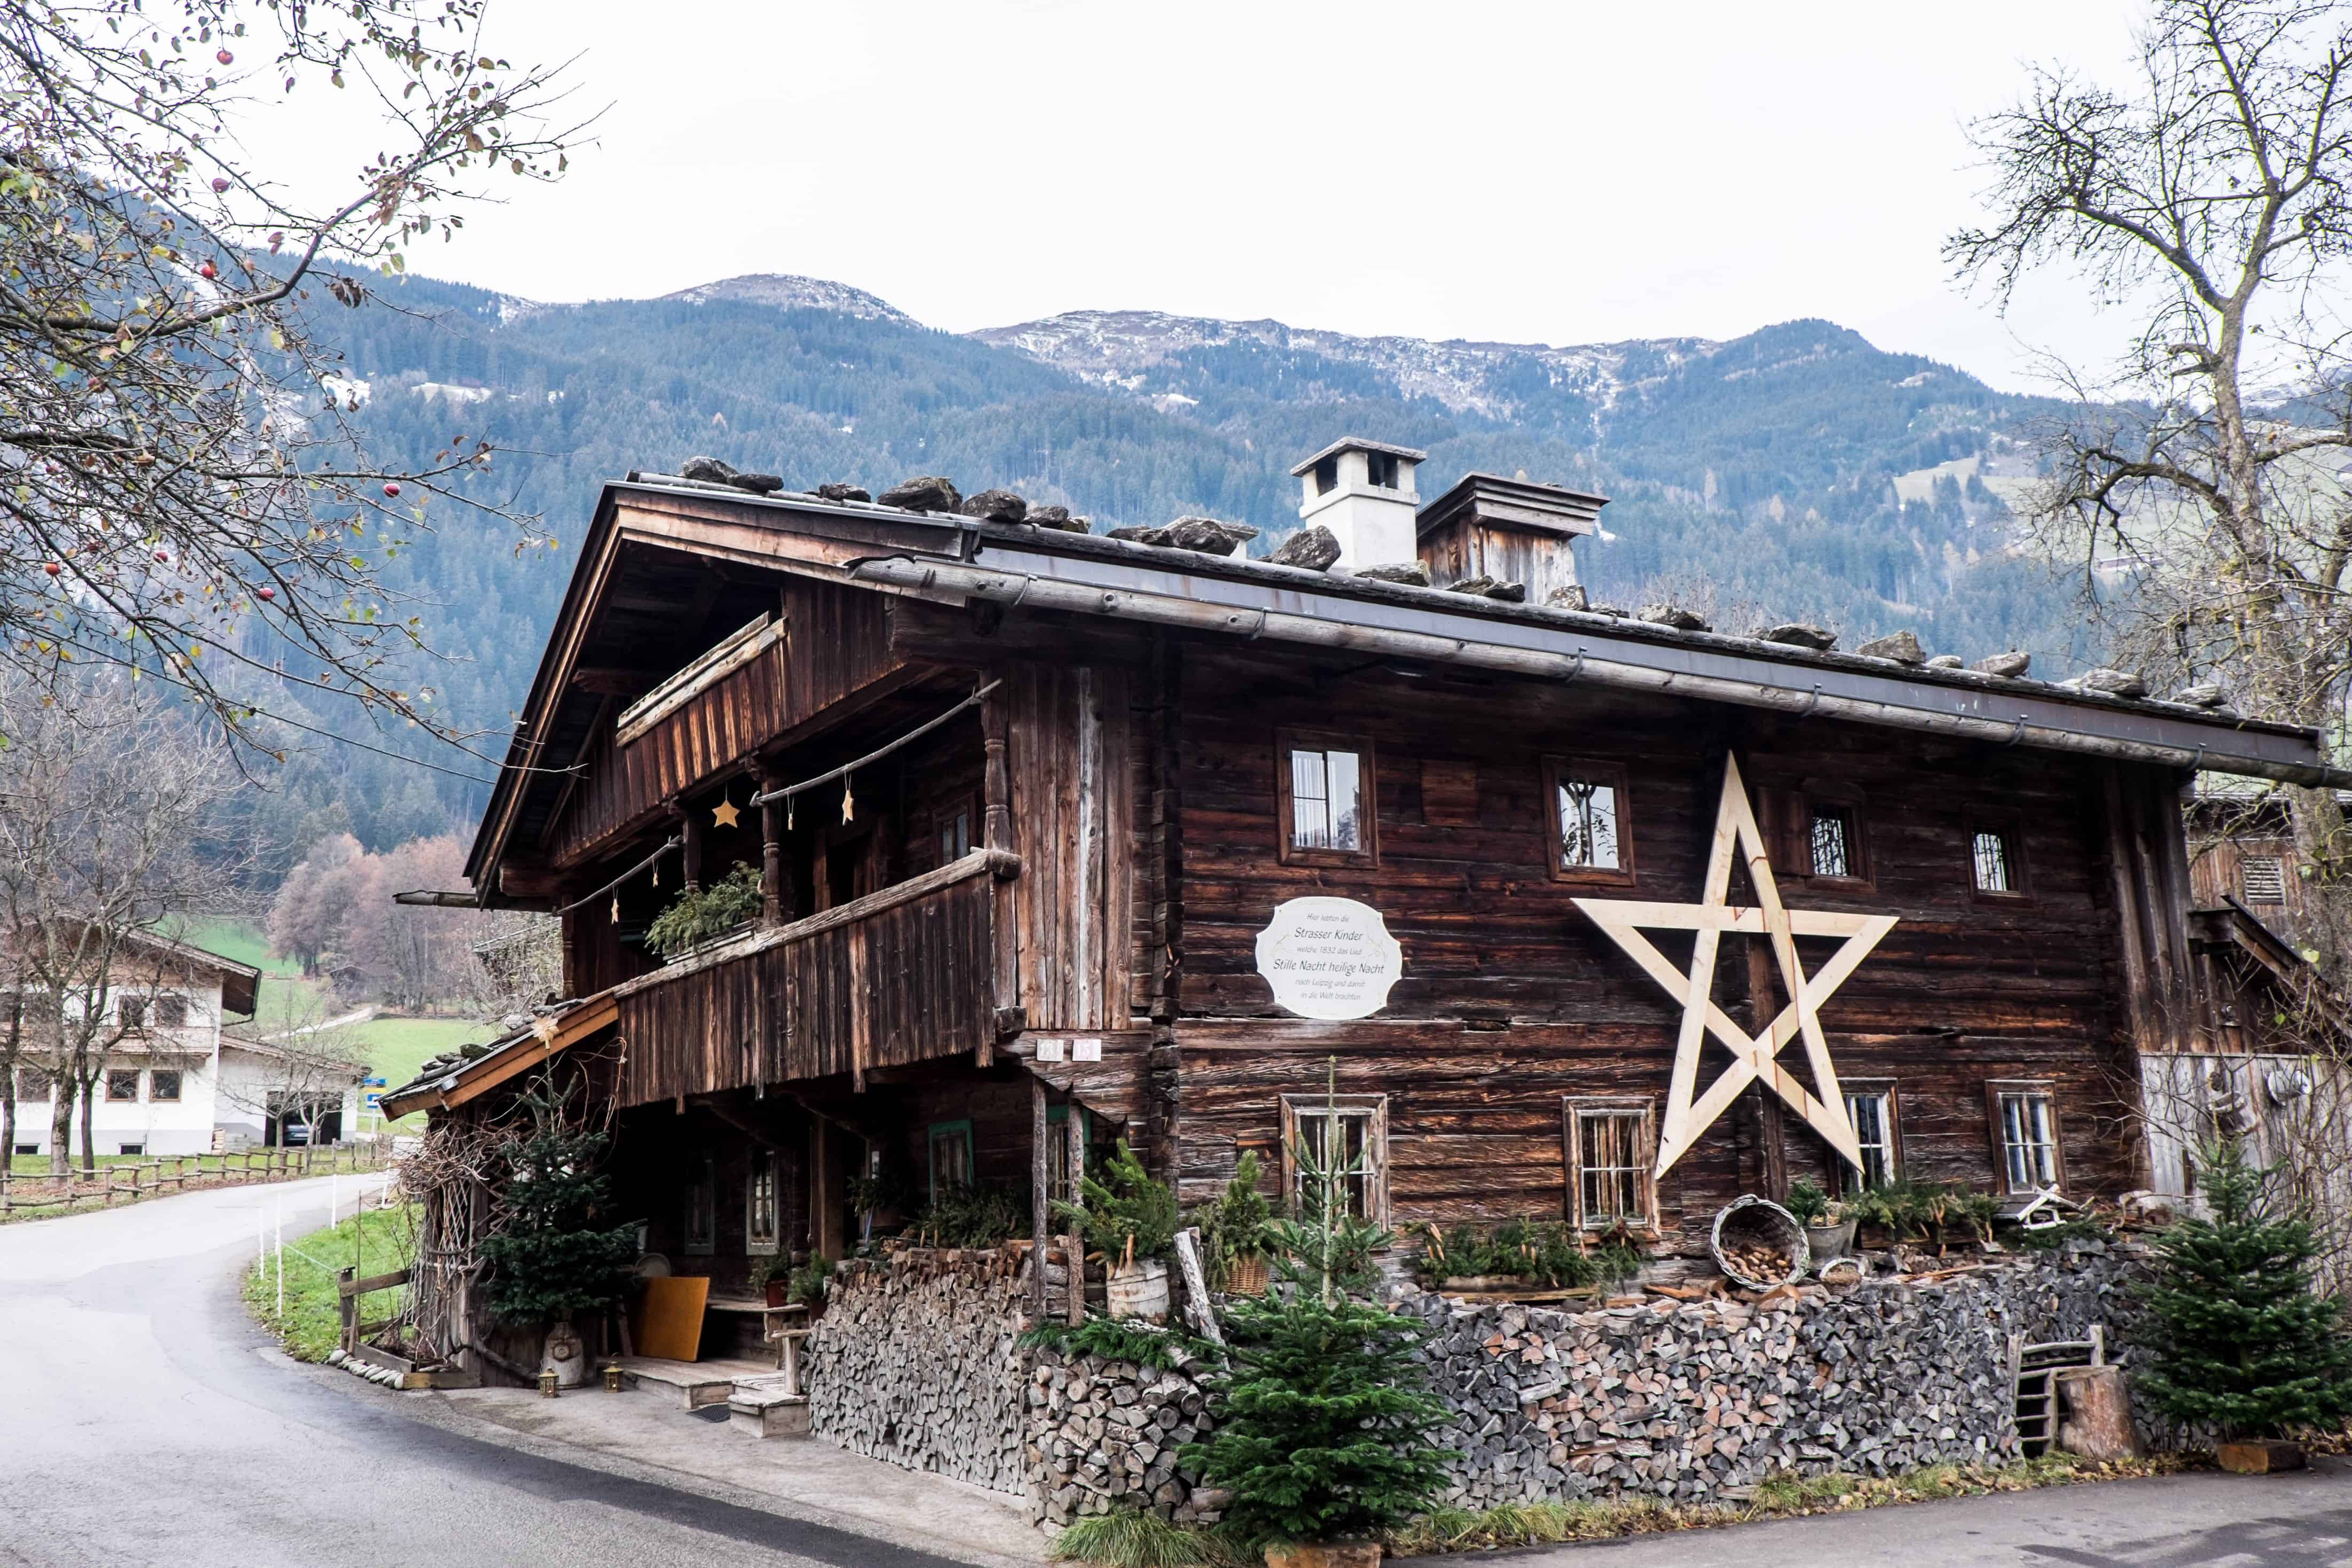 Silent Night Strasser Family Singers House in Tirol Austria 